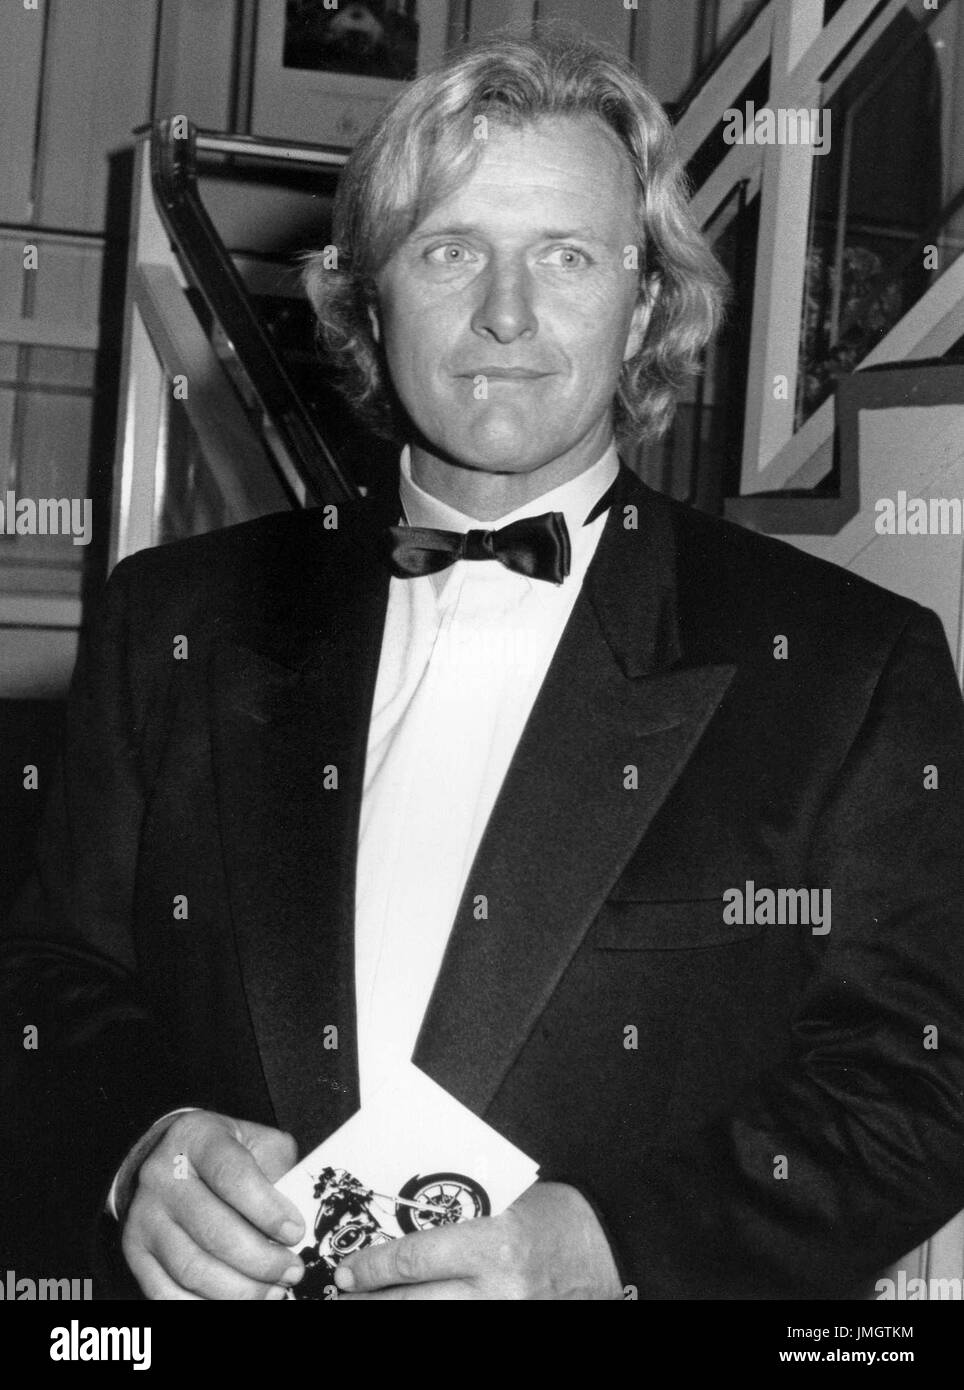 Rutger Hauer, attore olandese, assiste il British audiovisivo awards a Londra in Inghilterra il 18 ottobre 1990. Egli è ben noto per la sua parte nel film di fantascienza Blade Runner. Foto Stock